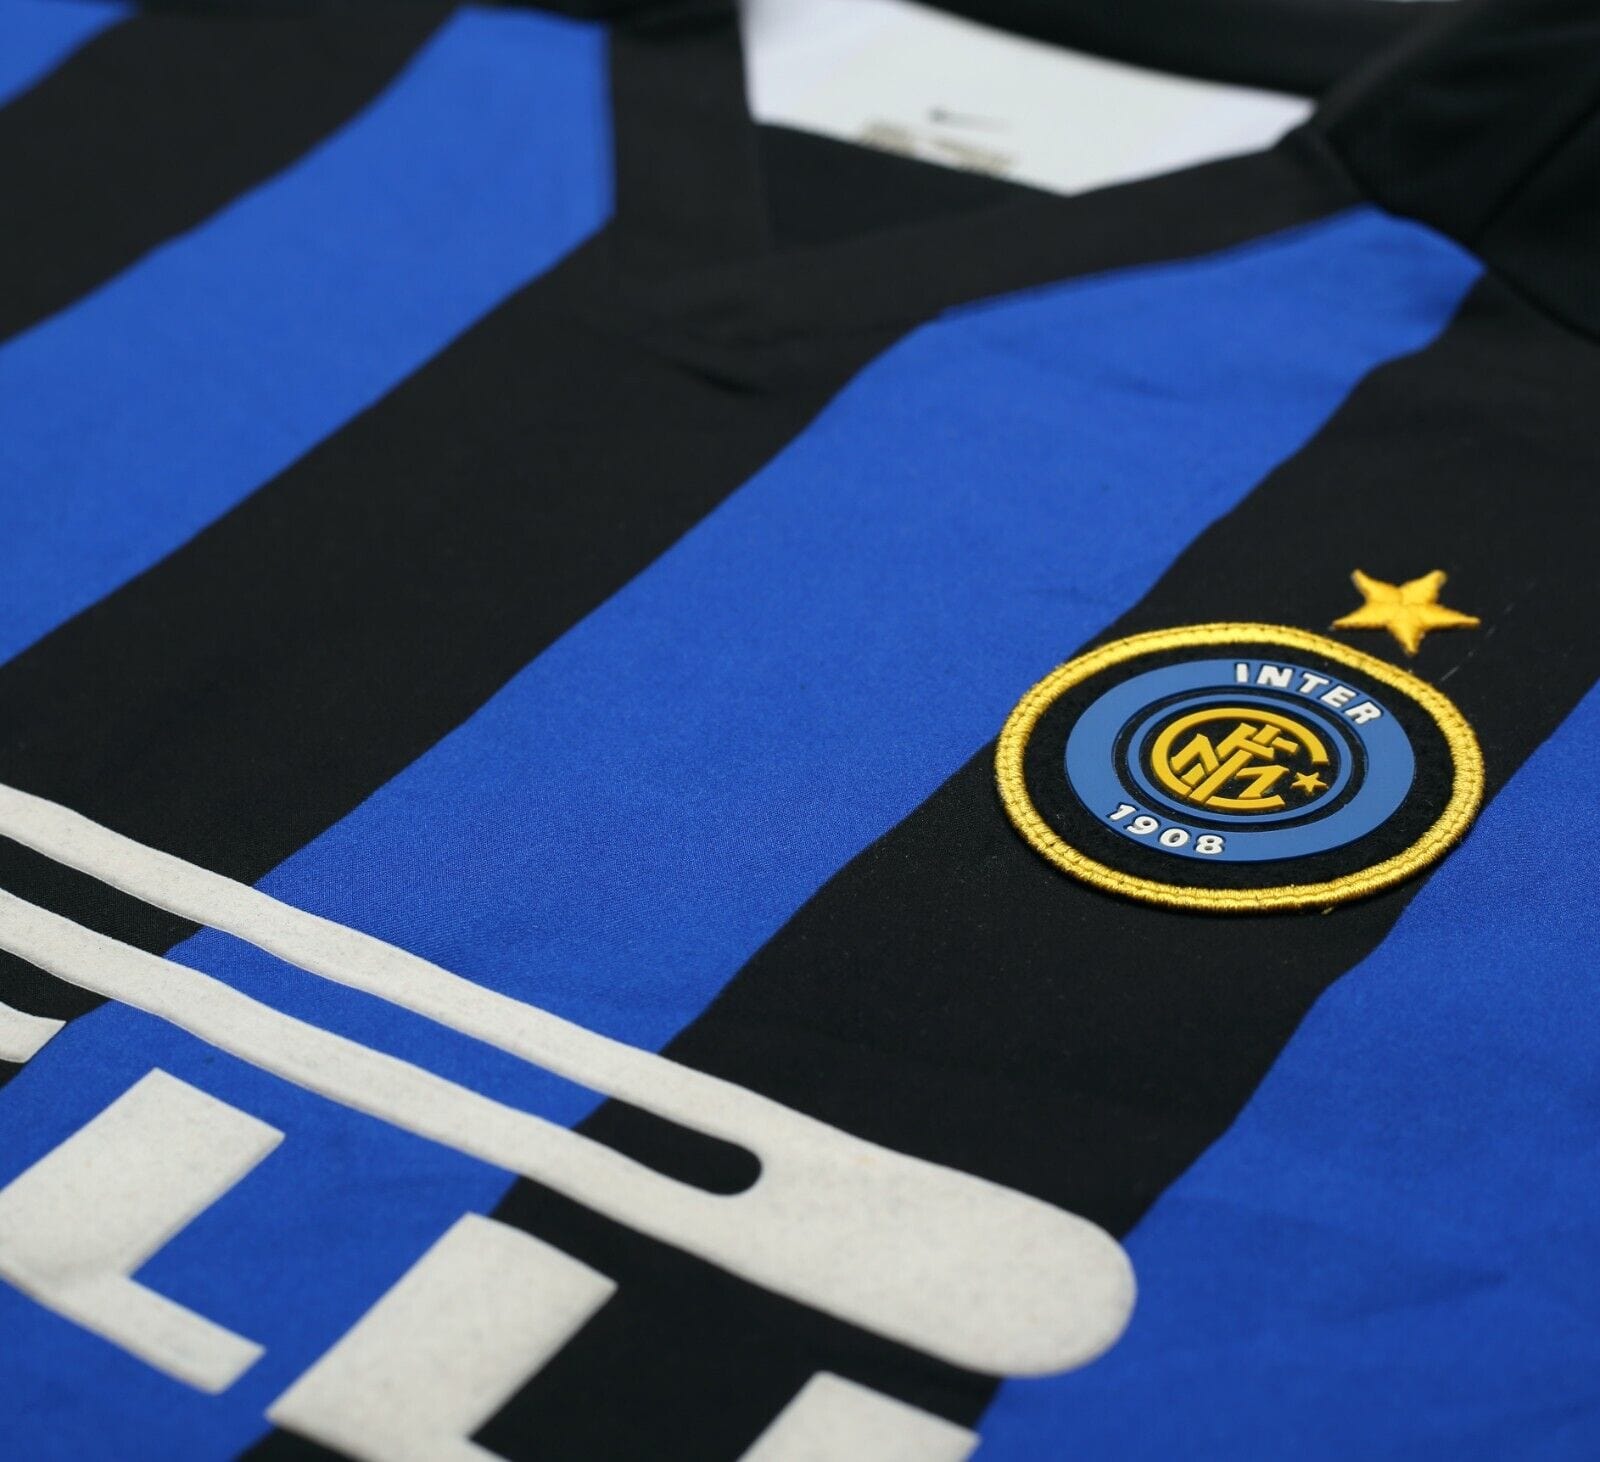 2002/03 BATISTUTA #19 Inter Milan Vintage Nike Home Football Shirt Jersey (L)